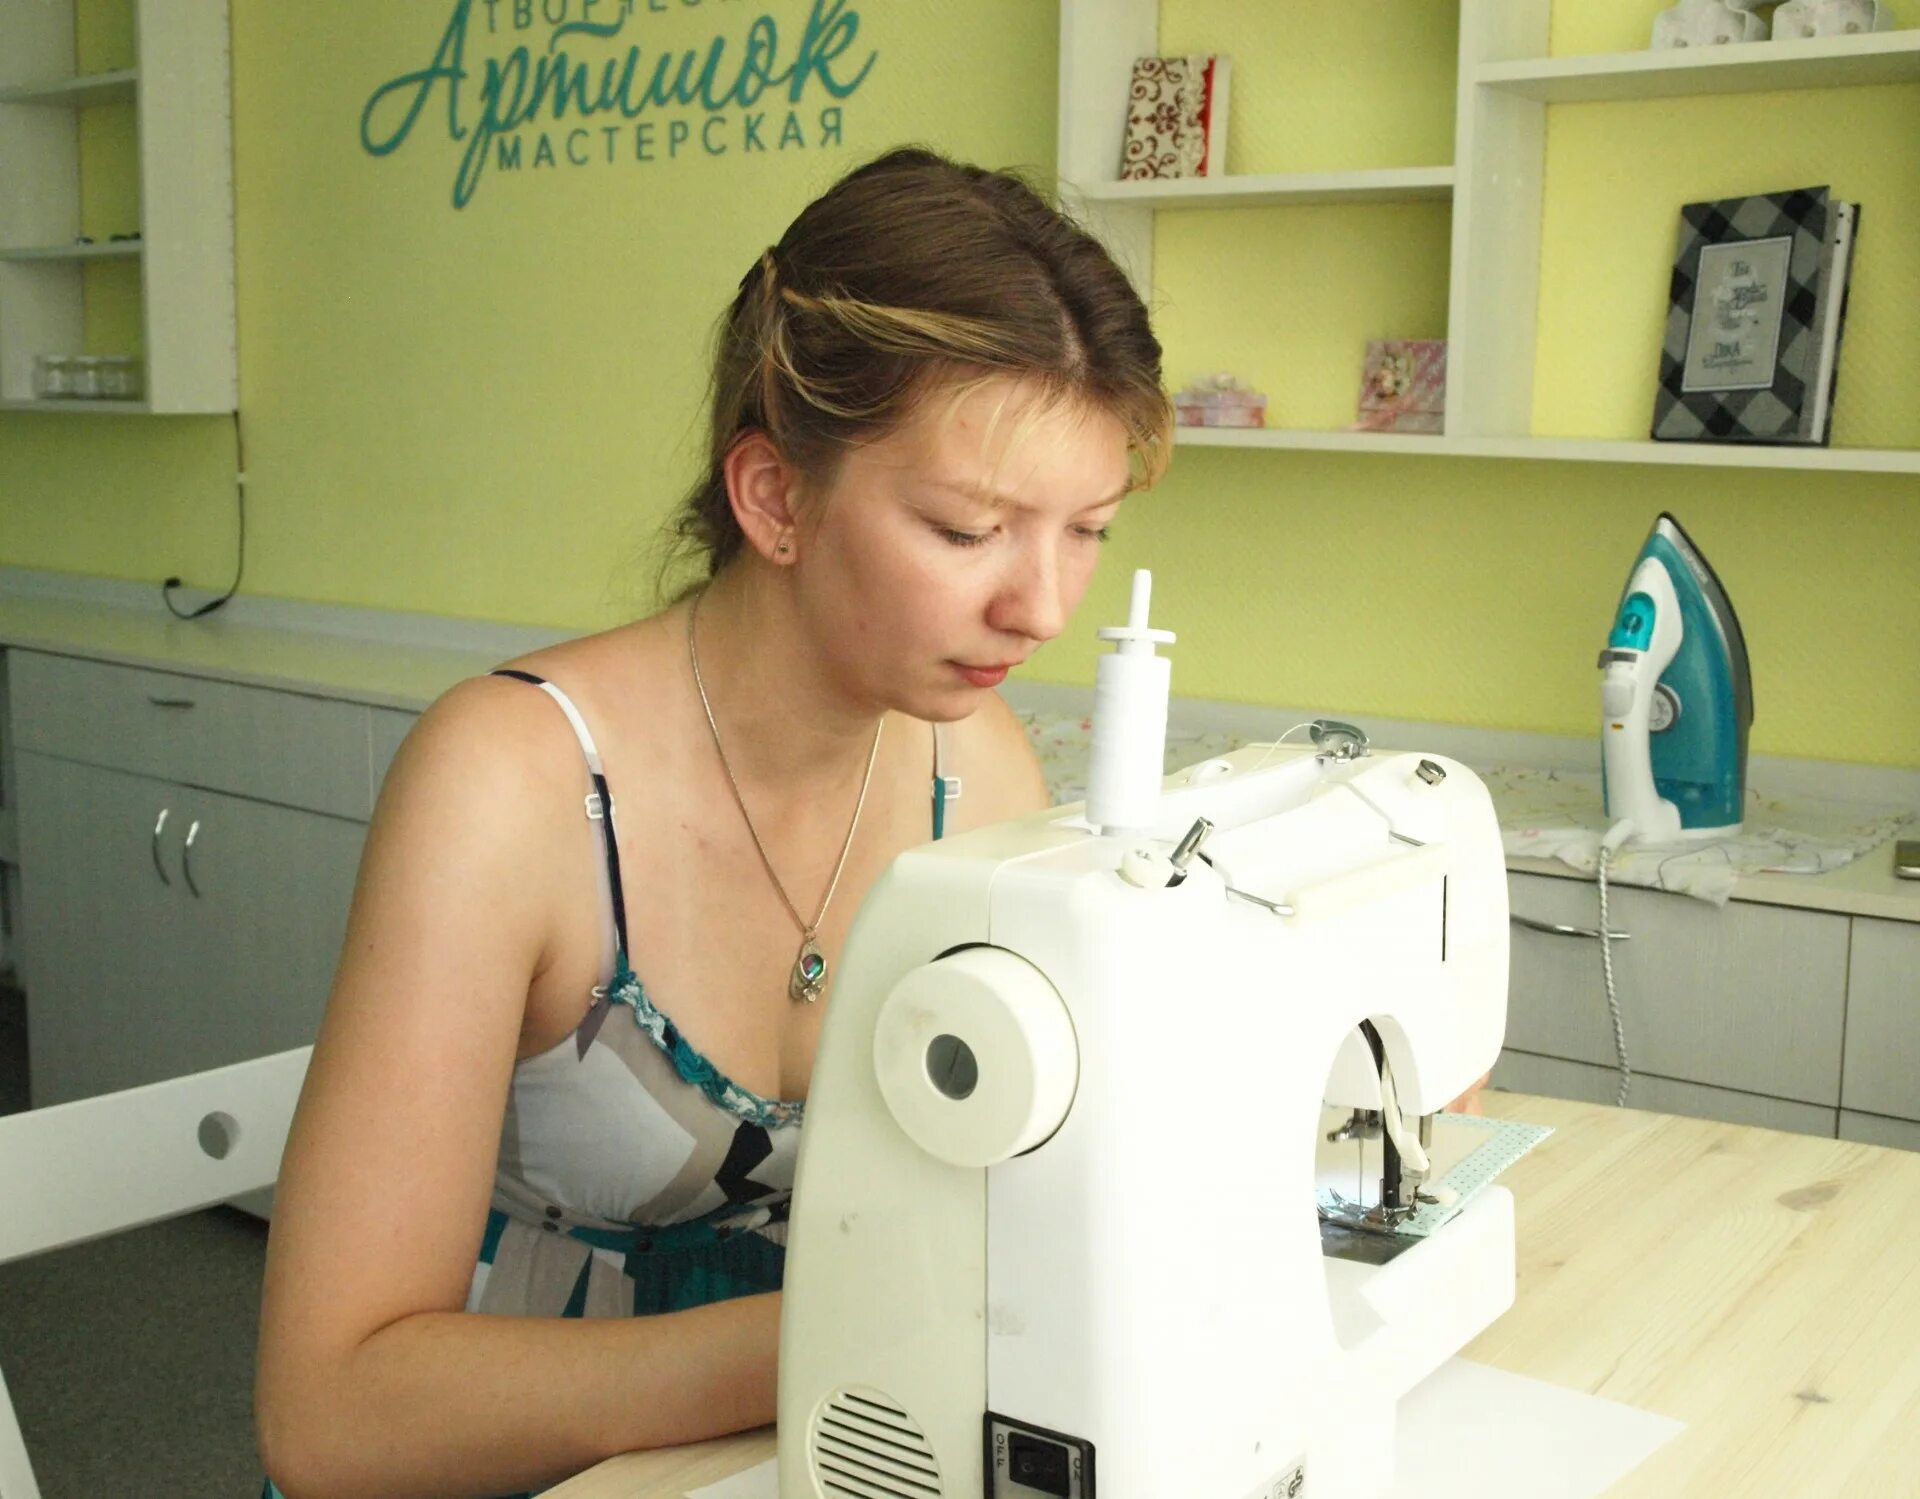 Работа швейной машинки видео. Швейная машинка и швея. Девушка за швейной машинкой. Швейная машинка для девочки. Фотосессия со швейной машинкой.